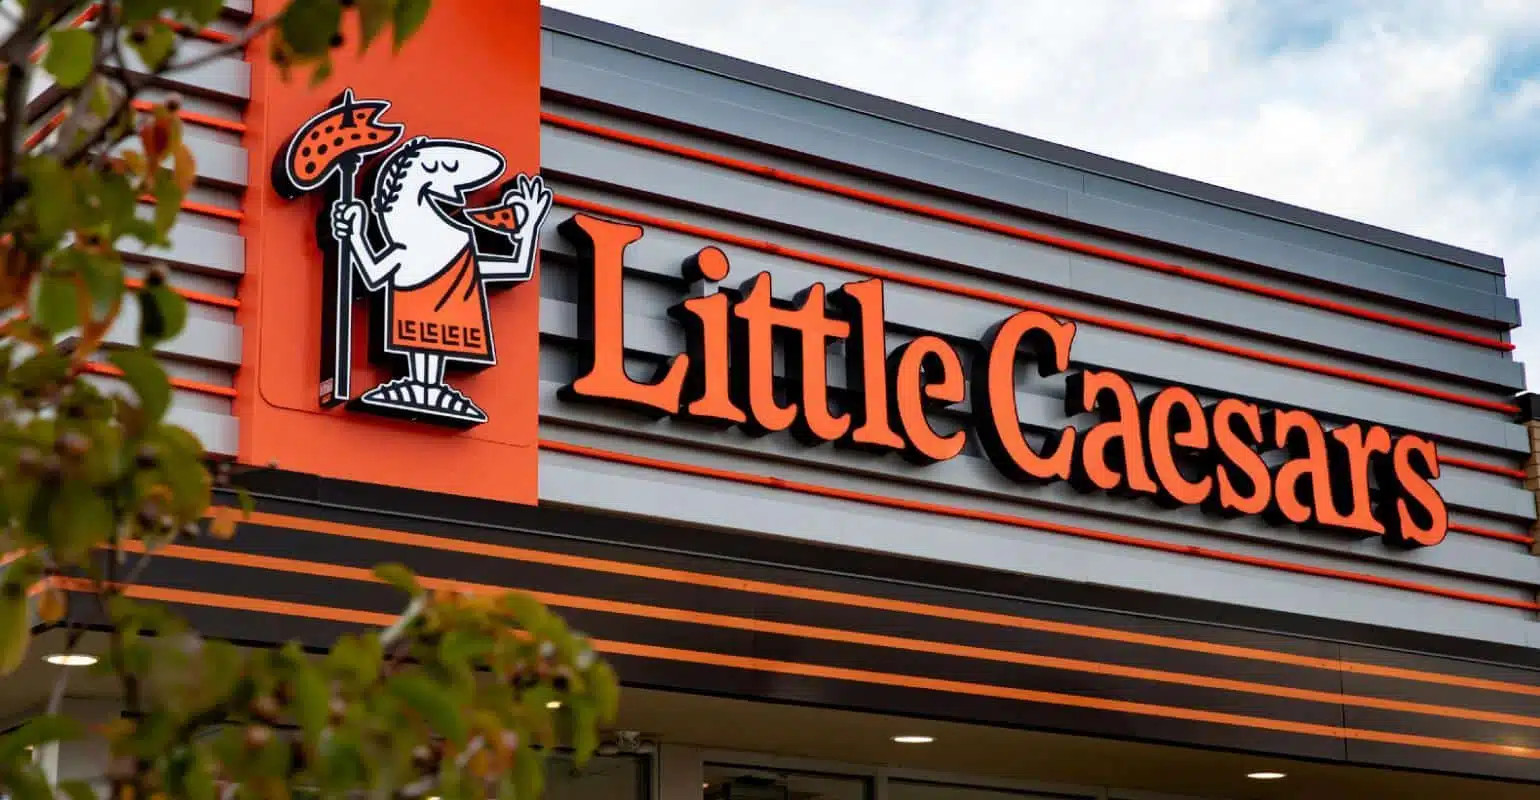 cheapest restaurant franchises - Little Caesars